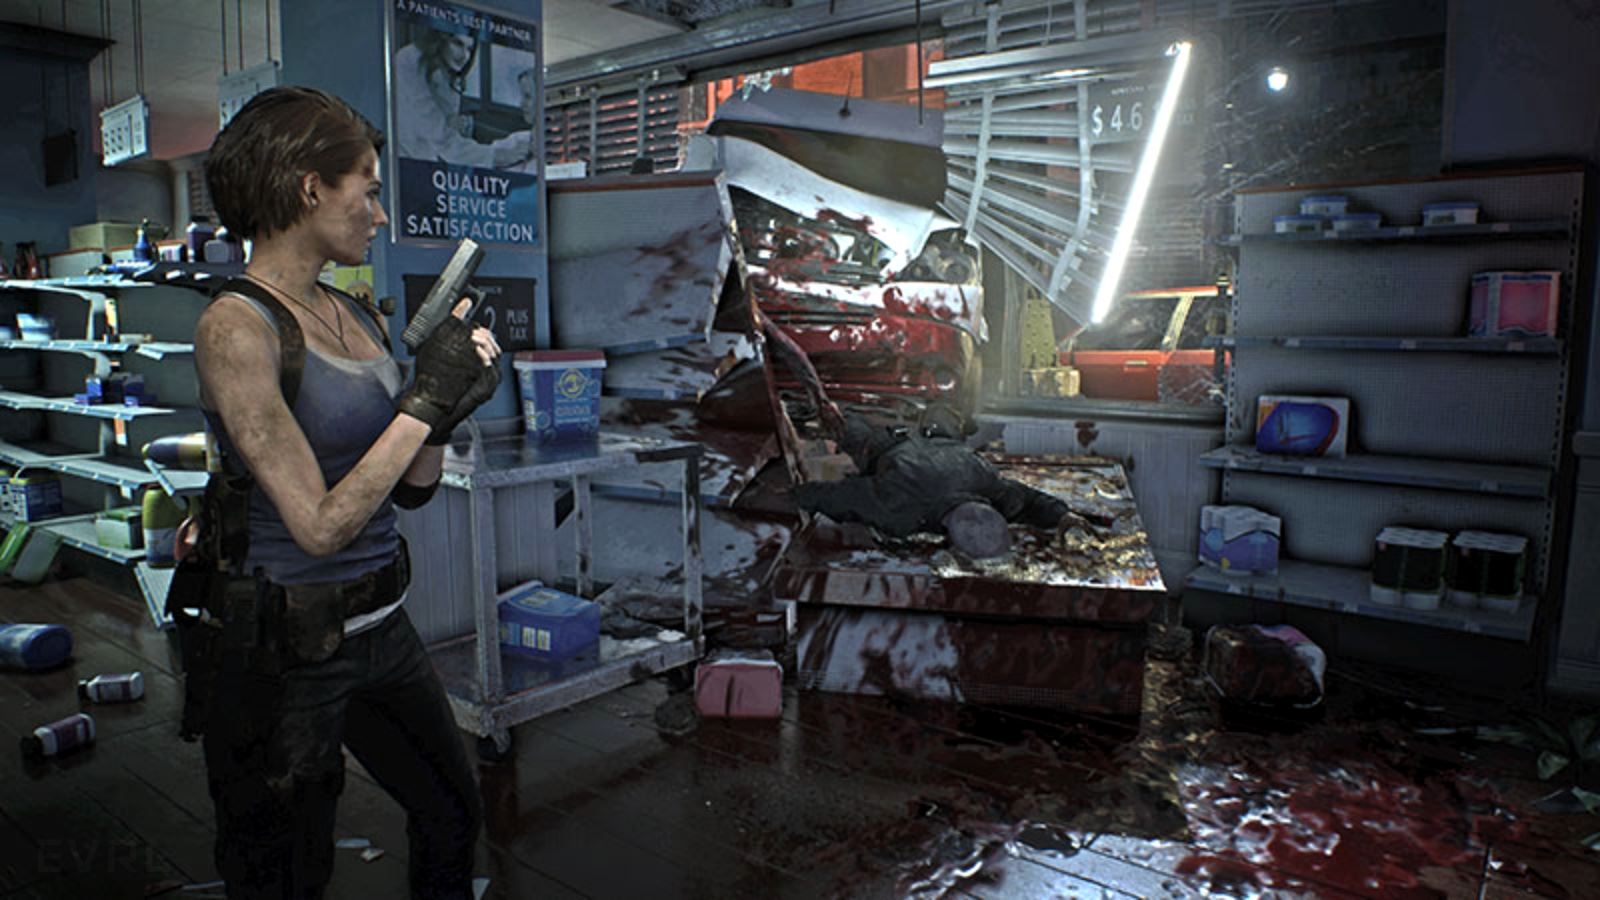 Resident evil 3 вакцина. Обитель зла 3 ремейк Джилл. Немезис резидент эвил 3 ремейк.